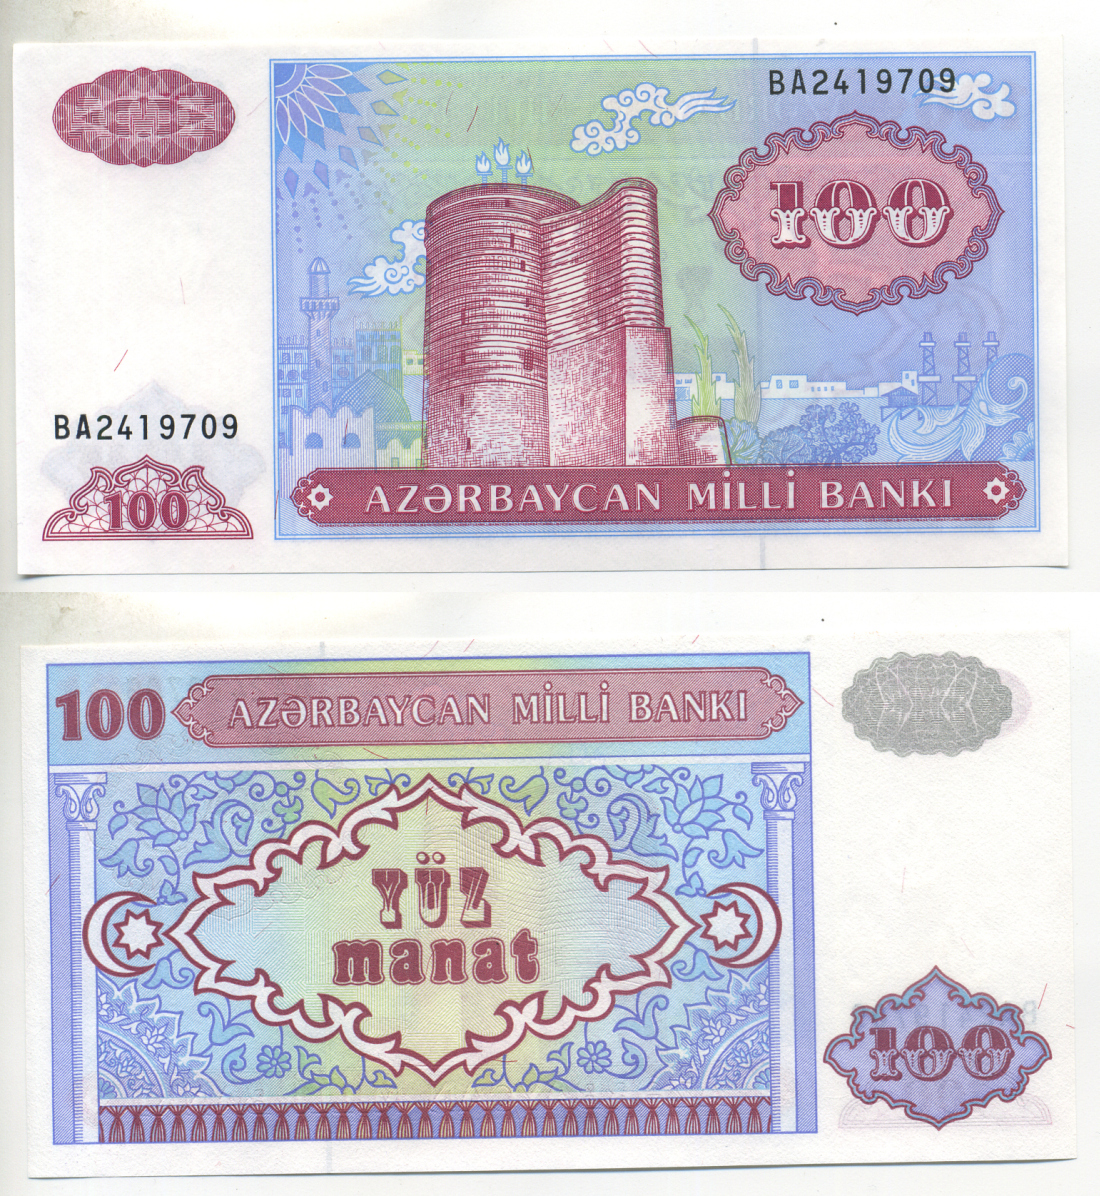 60 манат в рублях. Азербайджанский манат деньги. Старый азербайджанский манат. 100 Манат. Новый азербайджанский манат.